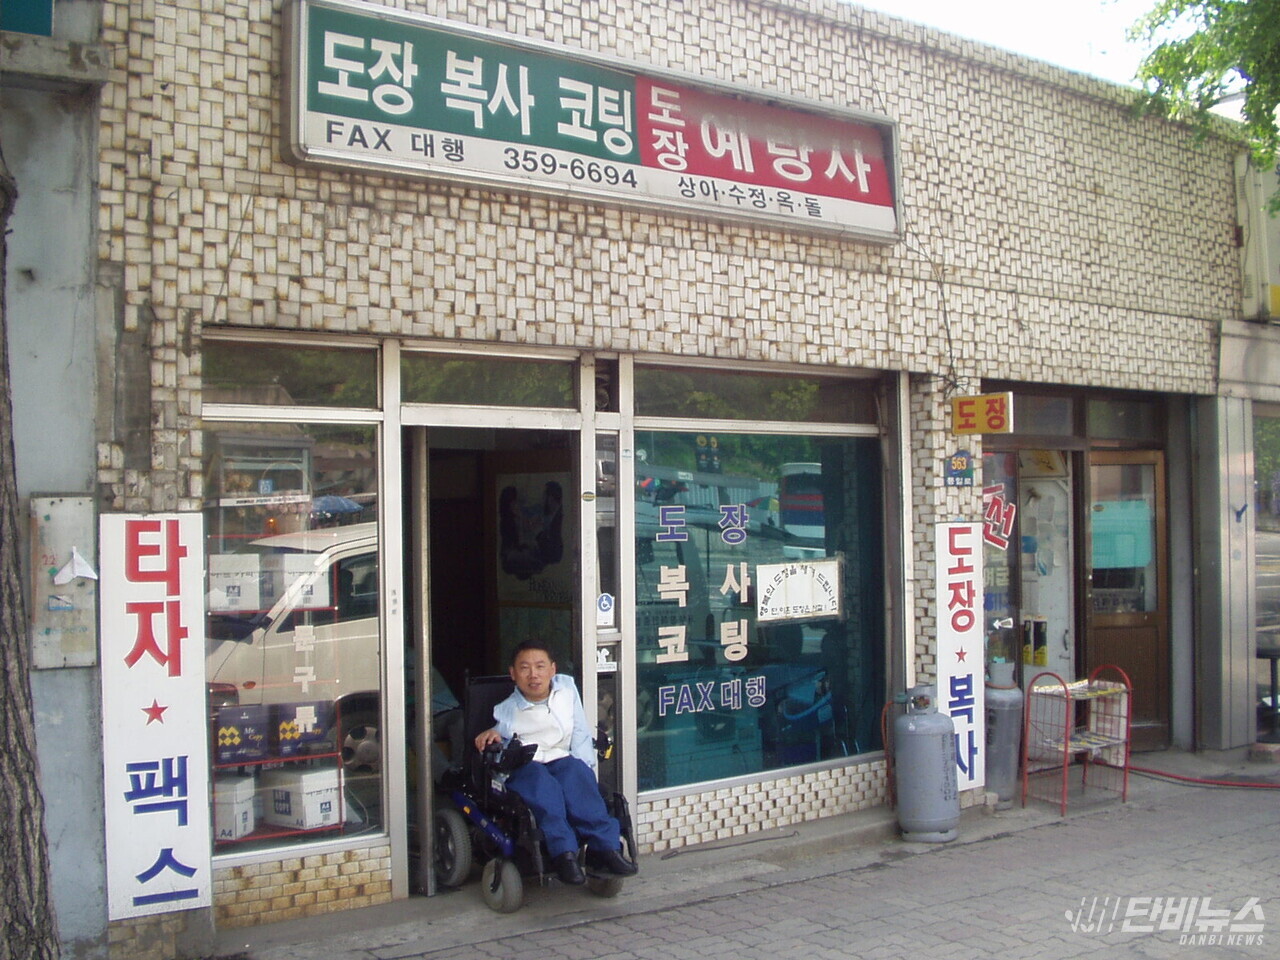 오문영 센터장은 서울 상경 이후 도장가게 예랑사를 운영했다. ⓒ 오문영